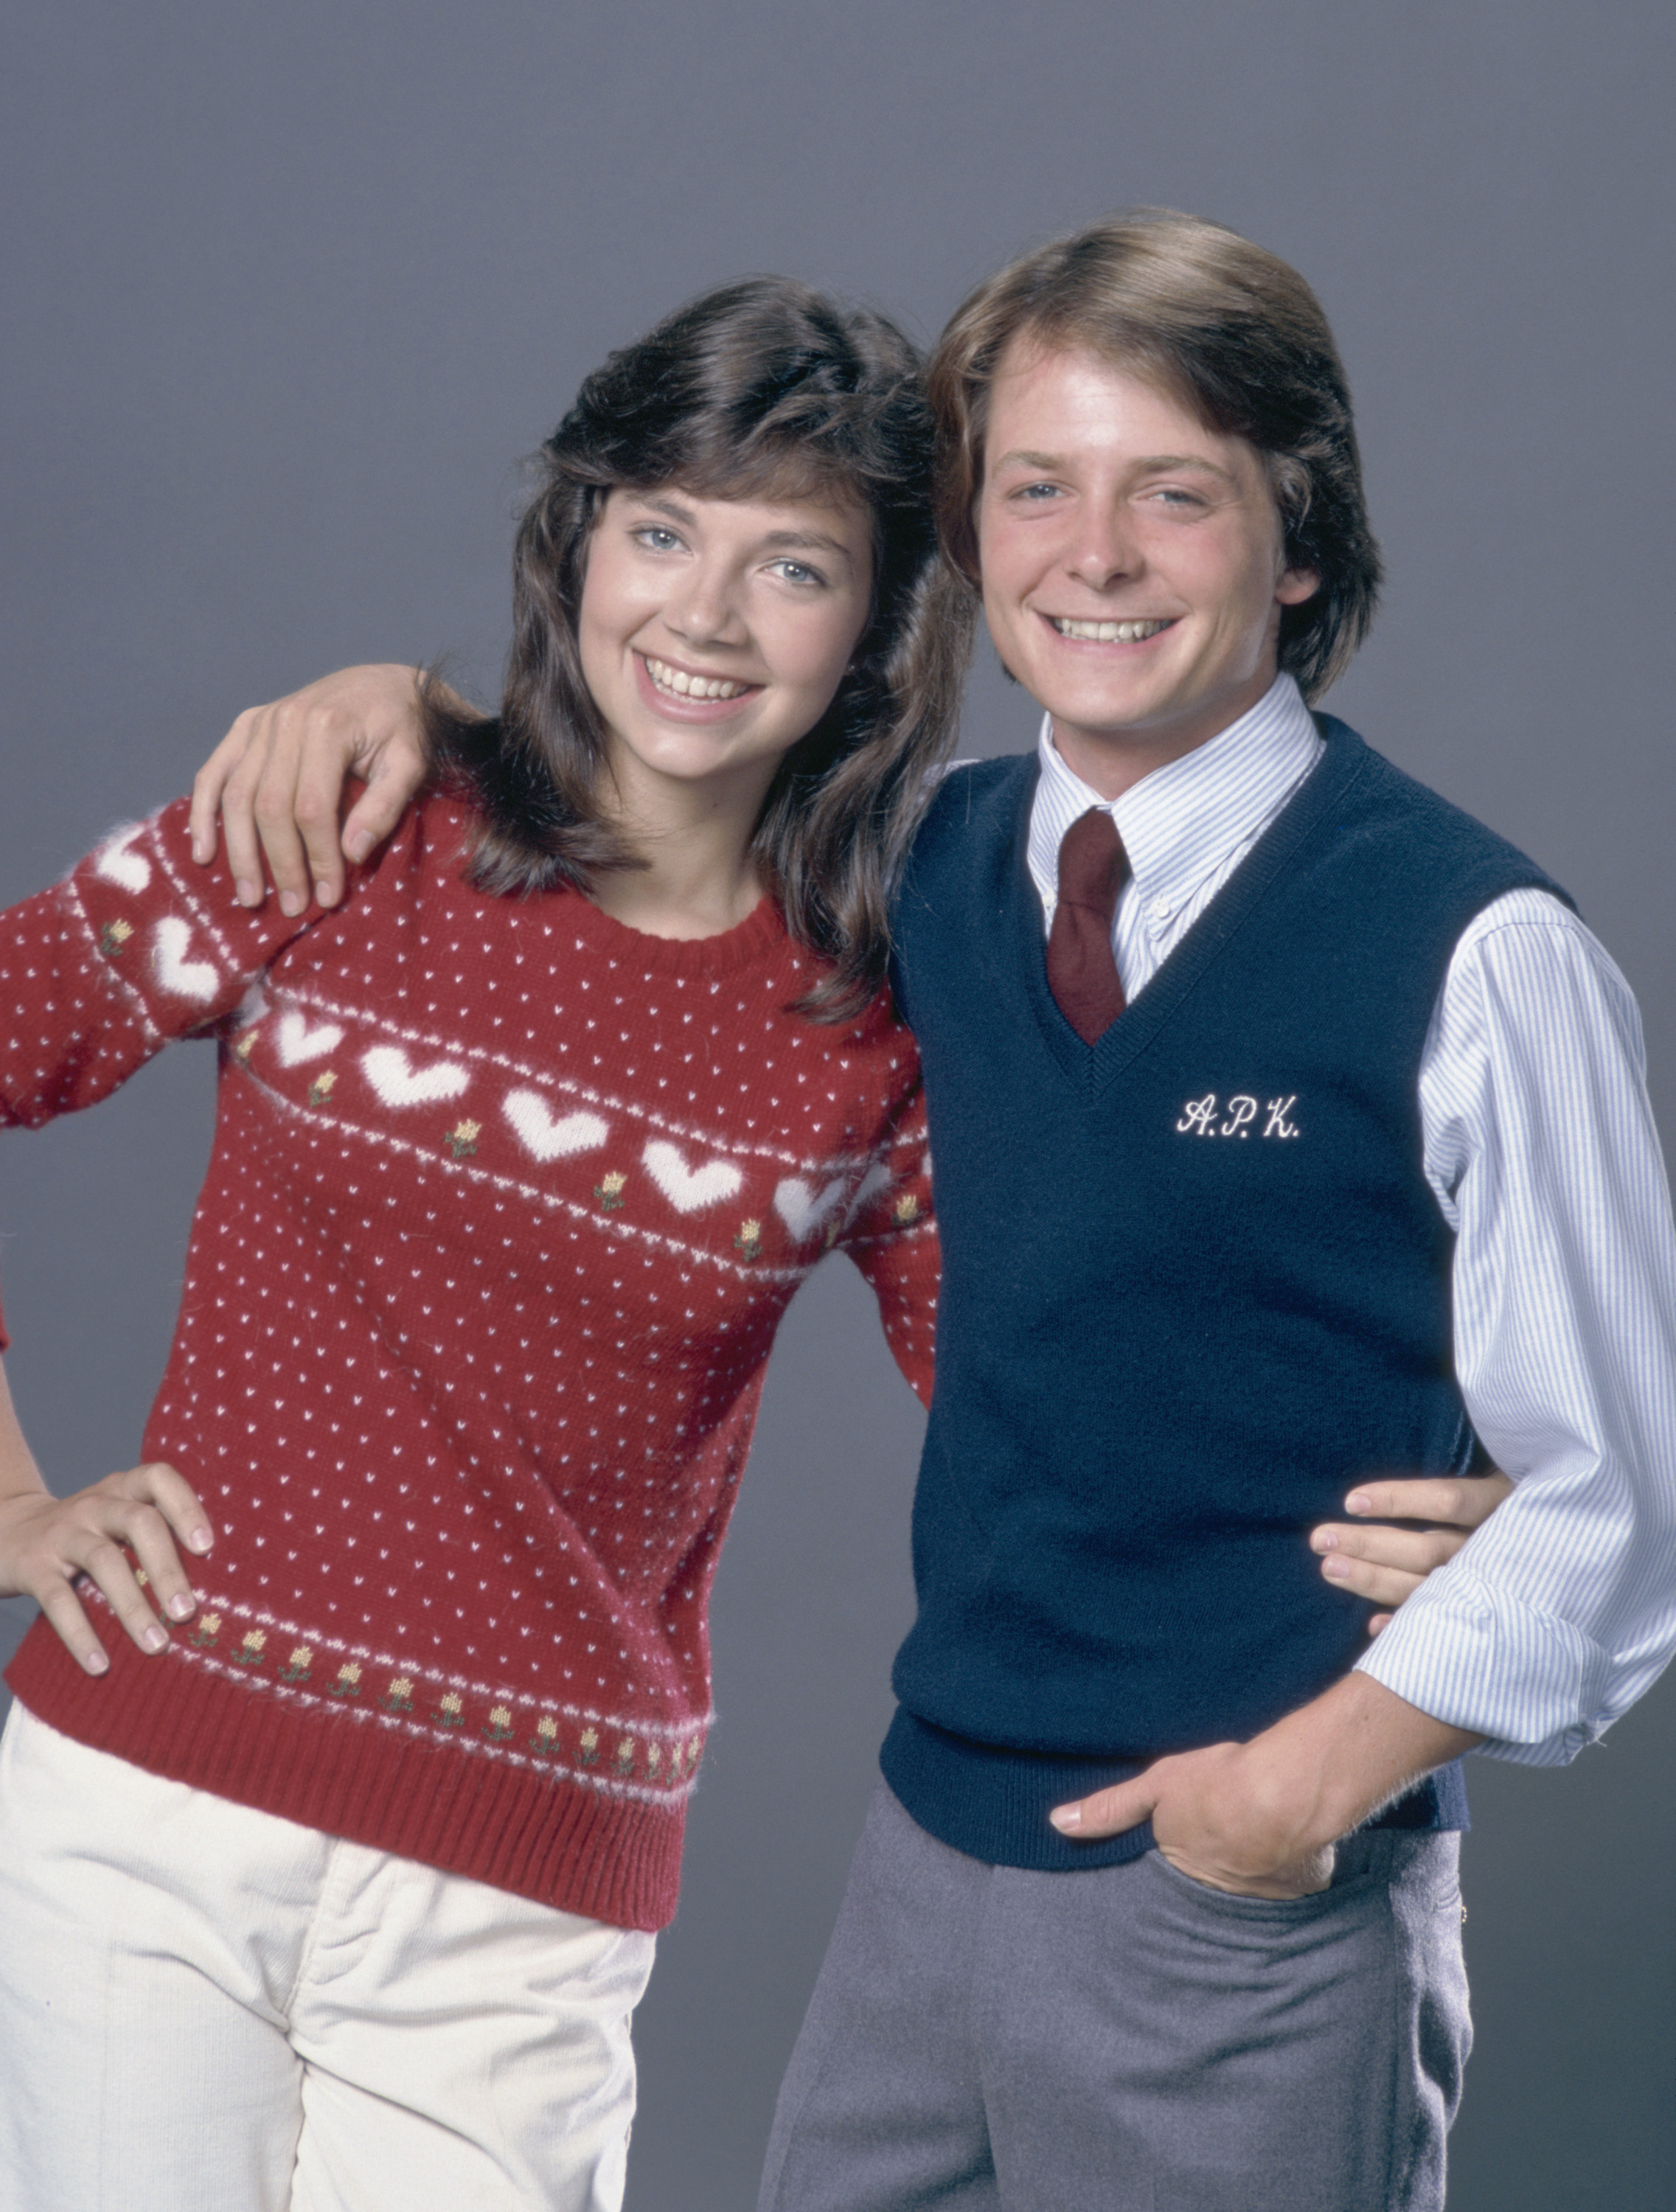 Justine Bateman et Michael J. Fox dans "Sacrée famille", circa 1980 | Source : Getty Images